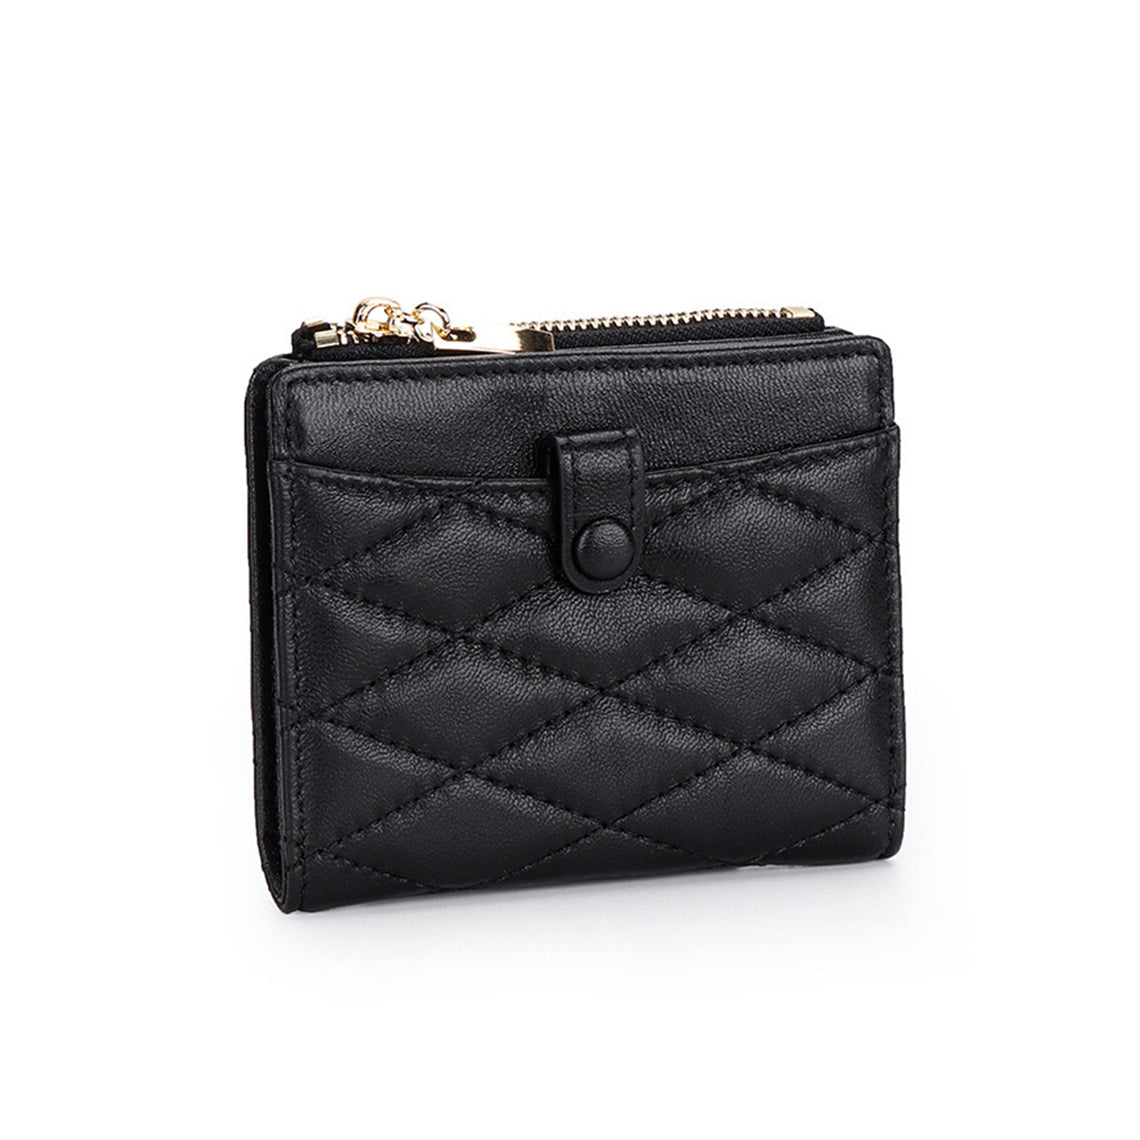 Black Leather Bi fold Wallet for Women - POPSEWING™